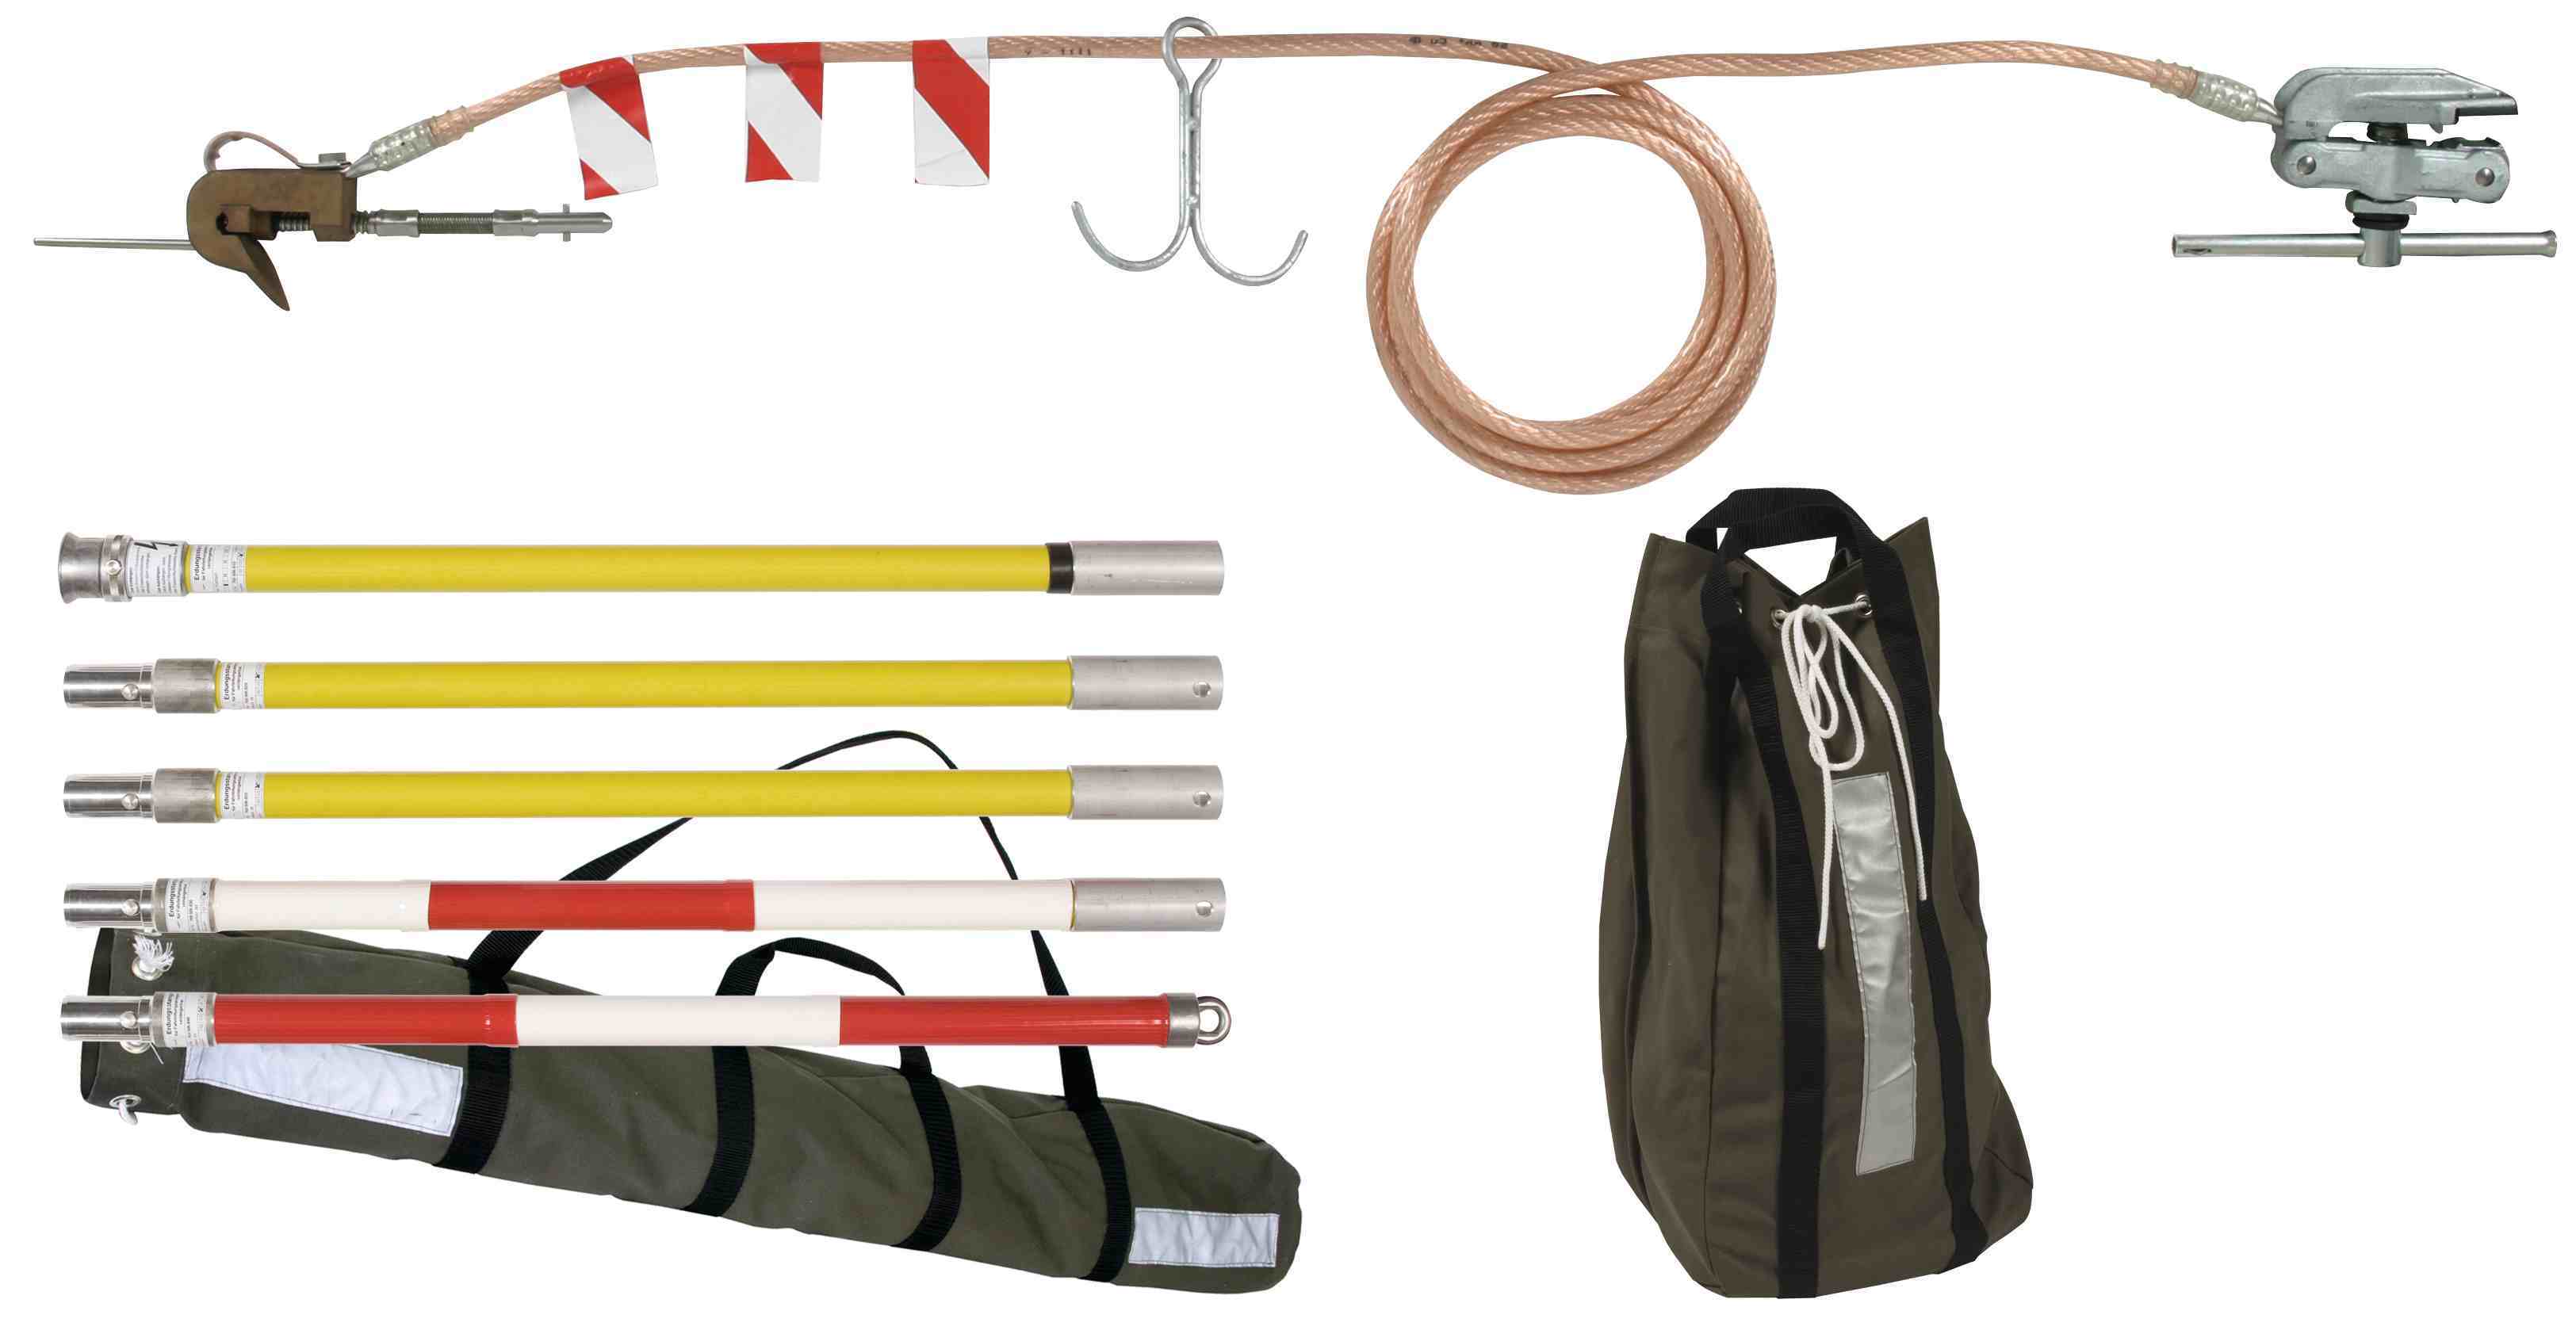 Bahnerdungsvorrichtung Pkw-Set, profilfrei - Erdungsstangen mit Alu-Kupplungssystem (Erdungsklemmen mit Knebel) mit Kupfer-Seil